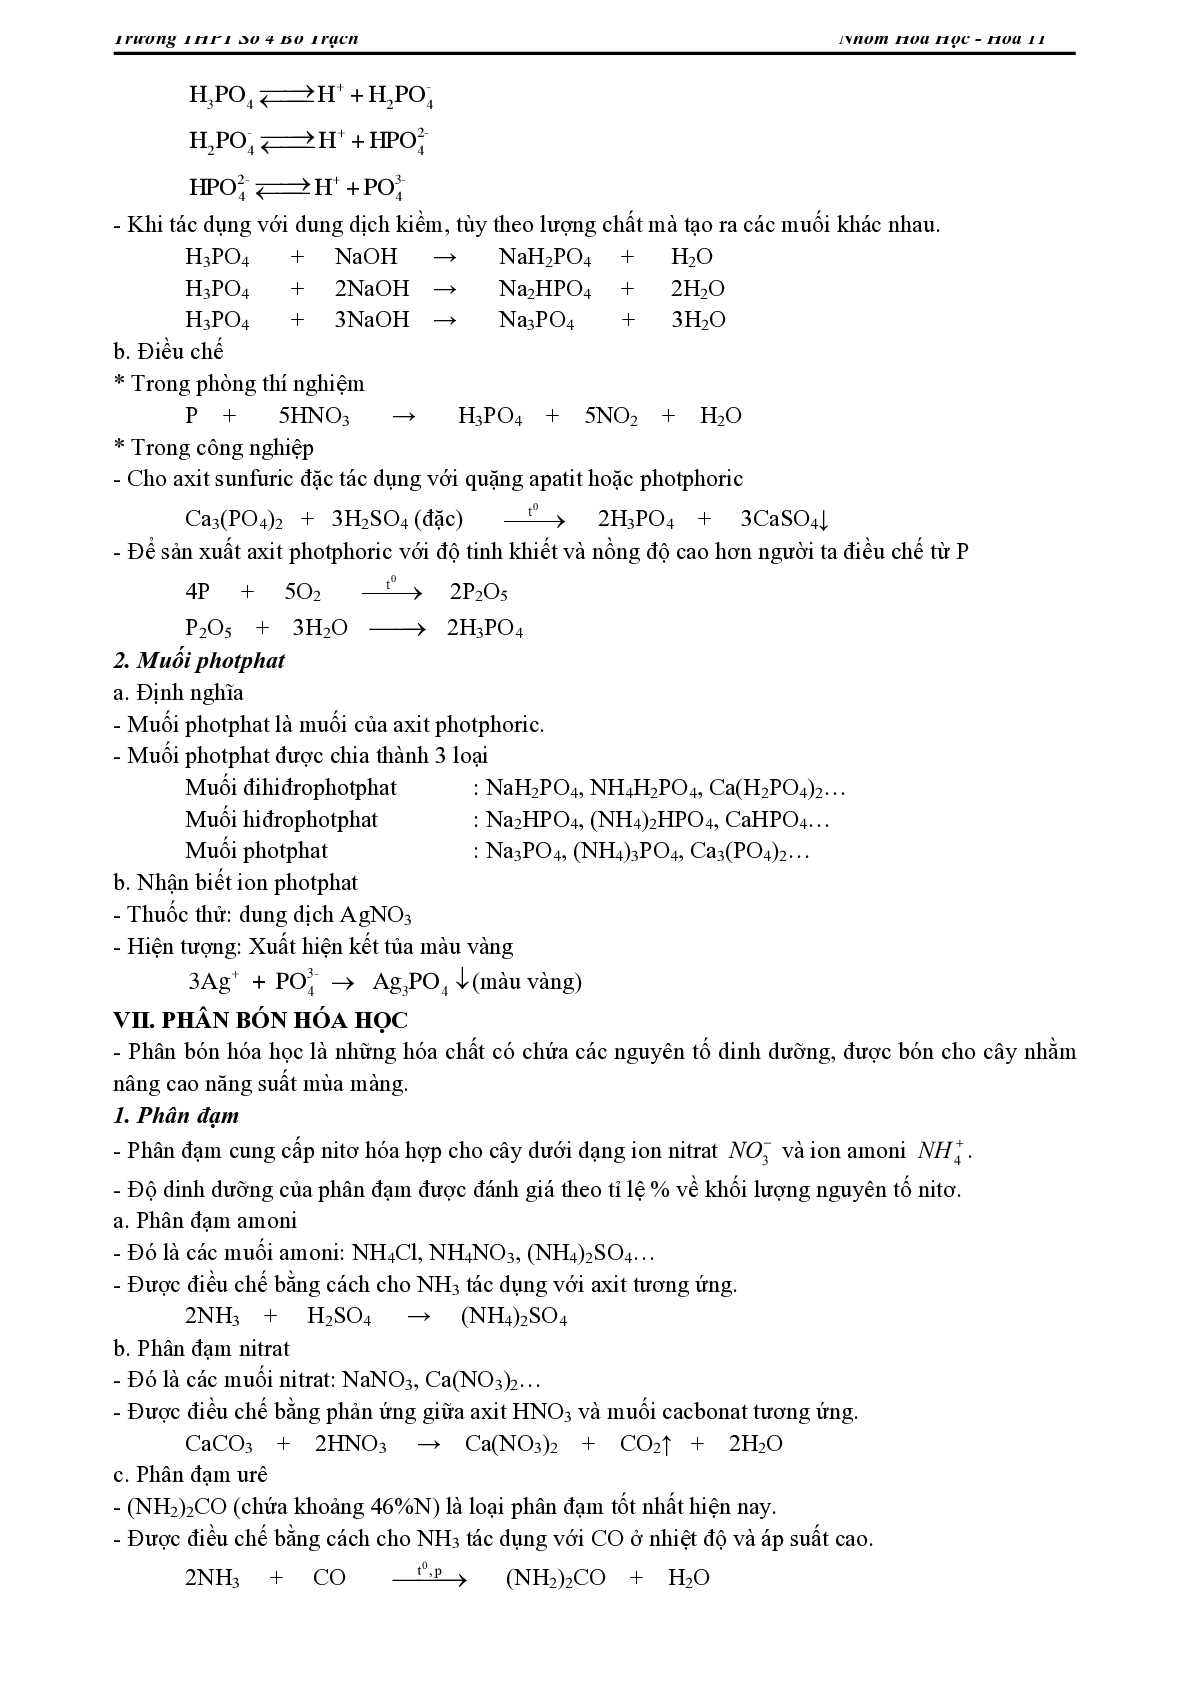 Lý thuyết, bài tập về Chương trình Hóa học lớp 11 có đáp án (trang 10)